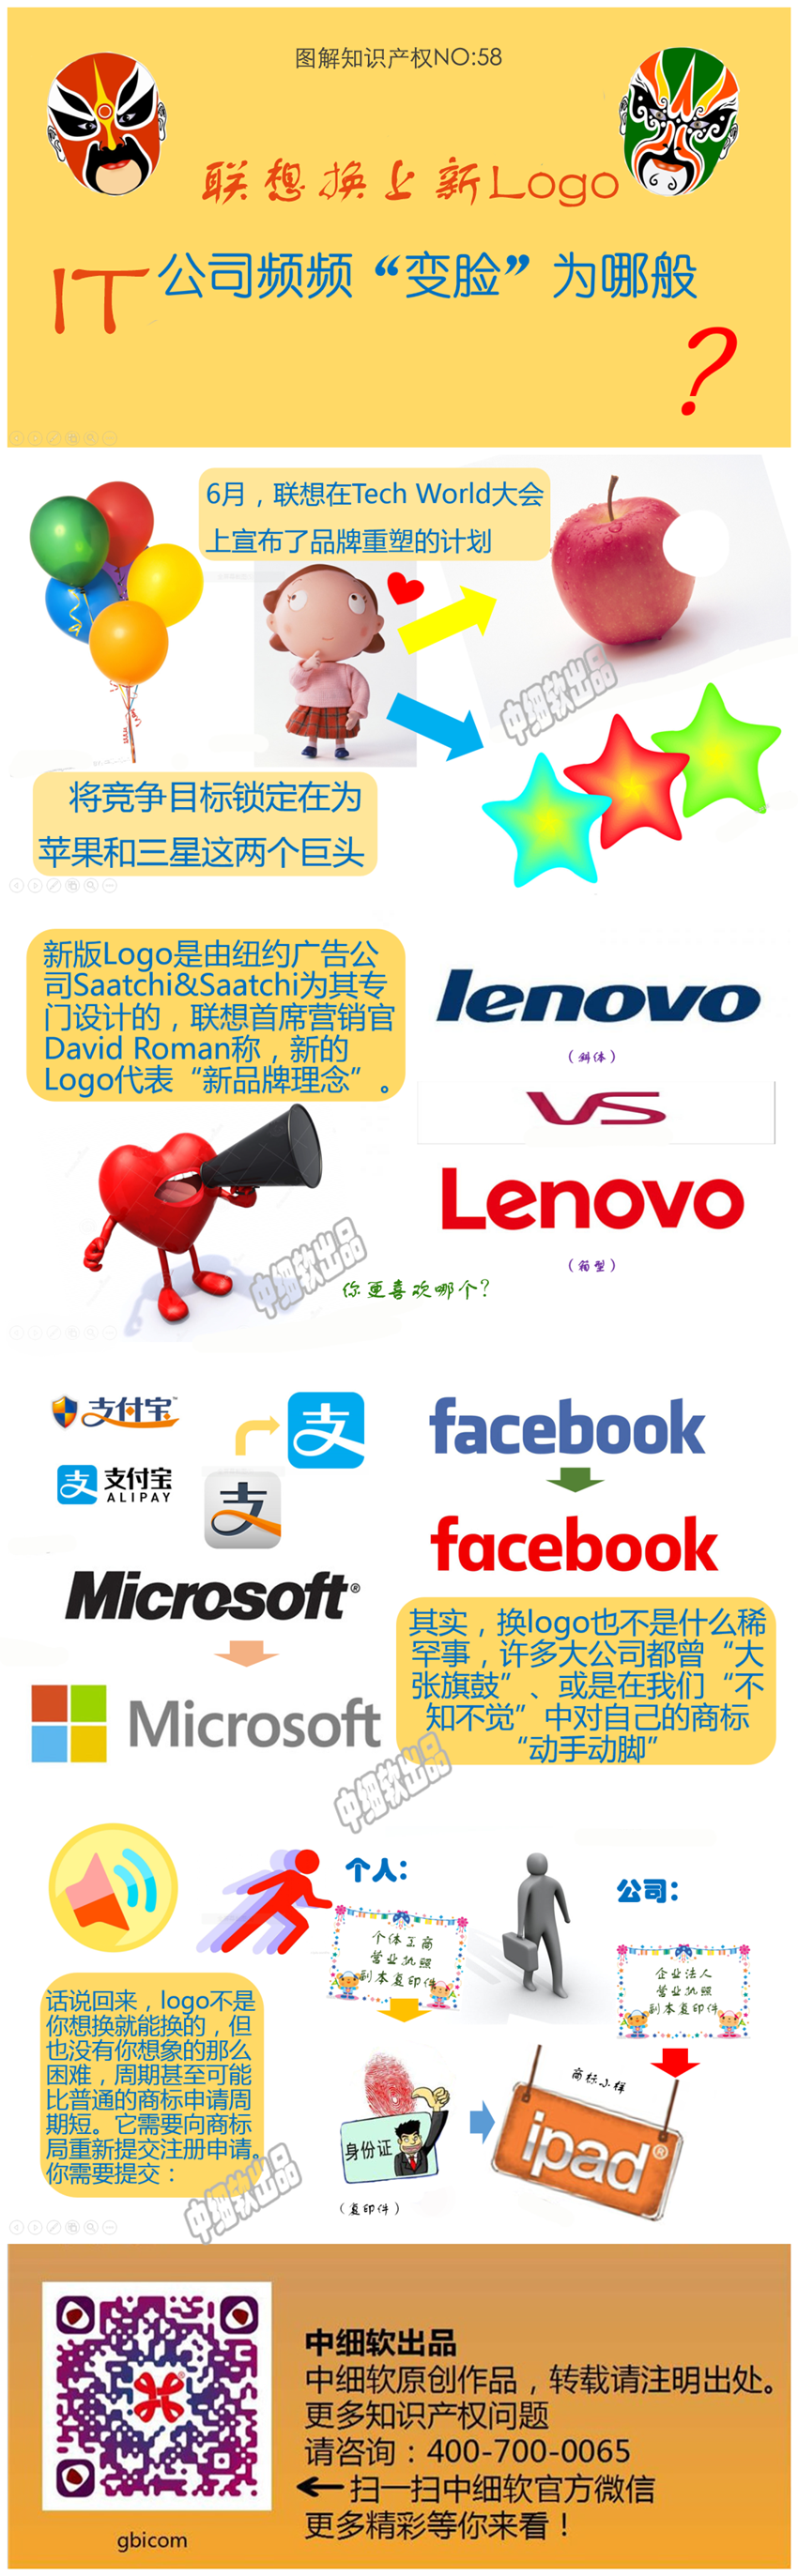 20150727-贾珂-联想换上新logo，IT公司频频“变脸”为哪般？_副本.png